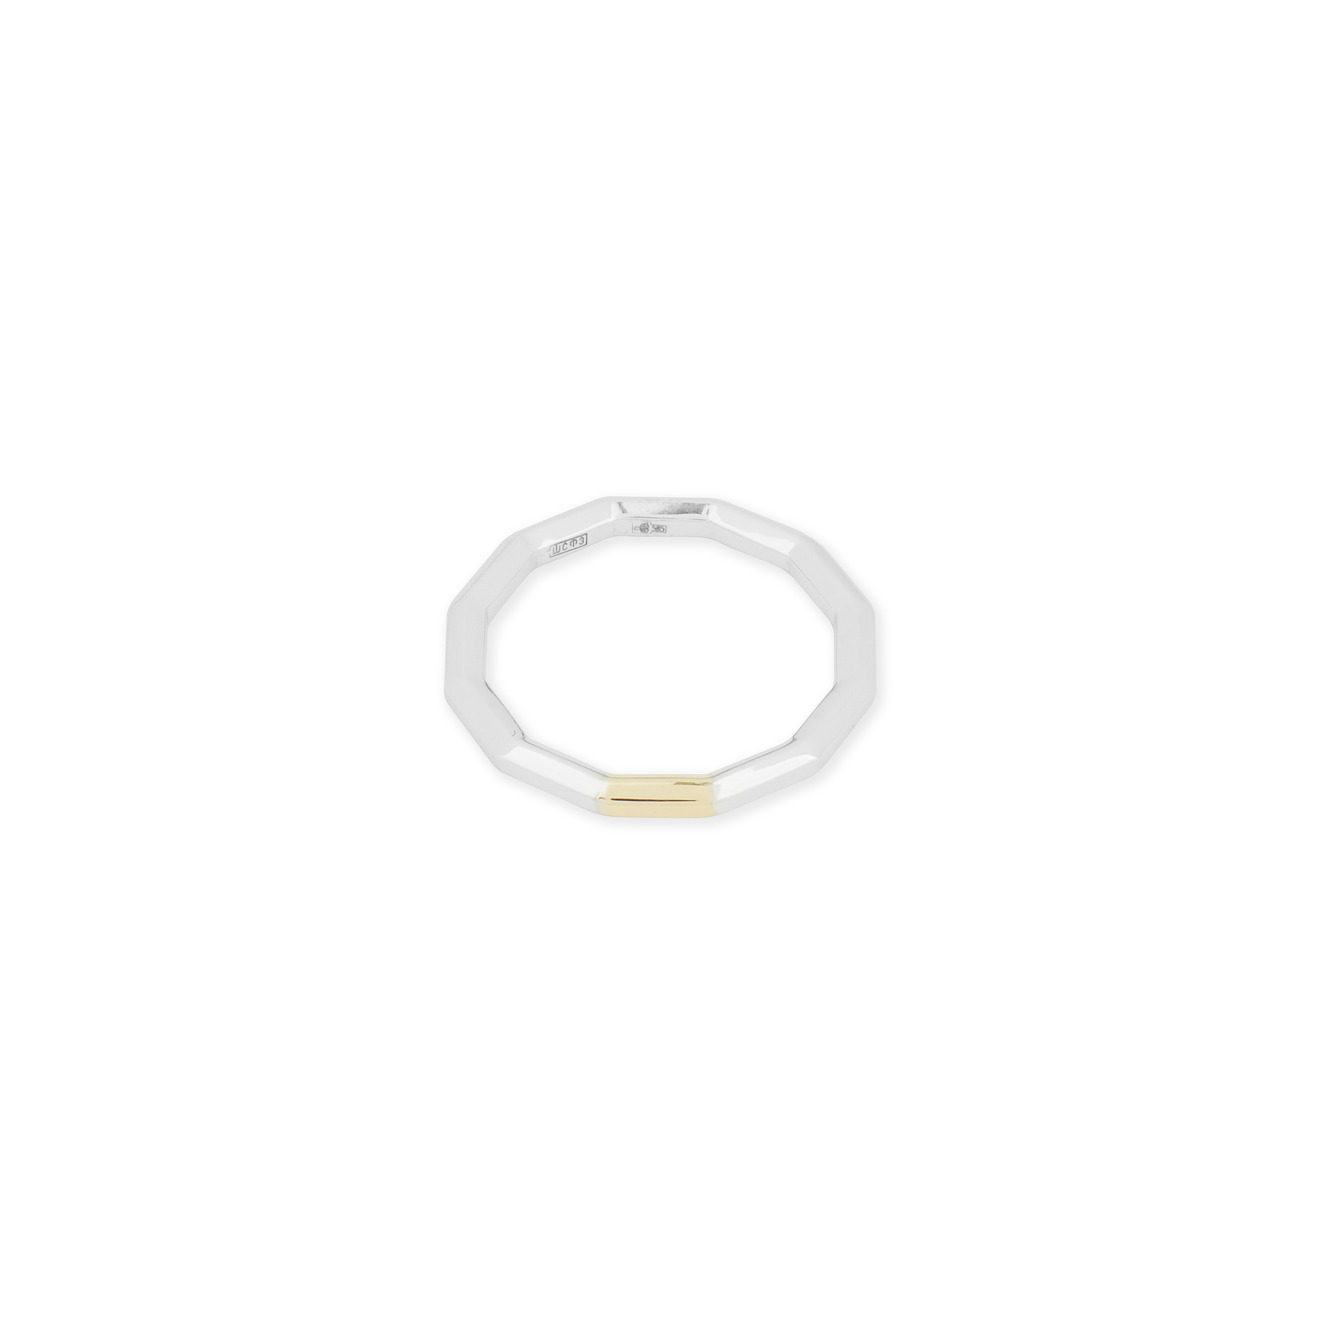 Avgvst Обручальное кольцо из золота Double Gold с сегментом из лимонного золота avgvst тини кольцо искра из золота